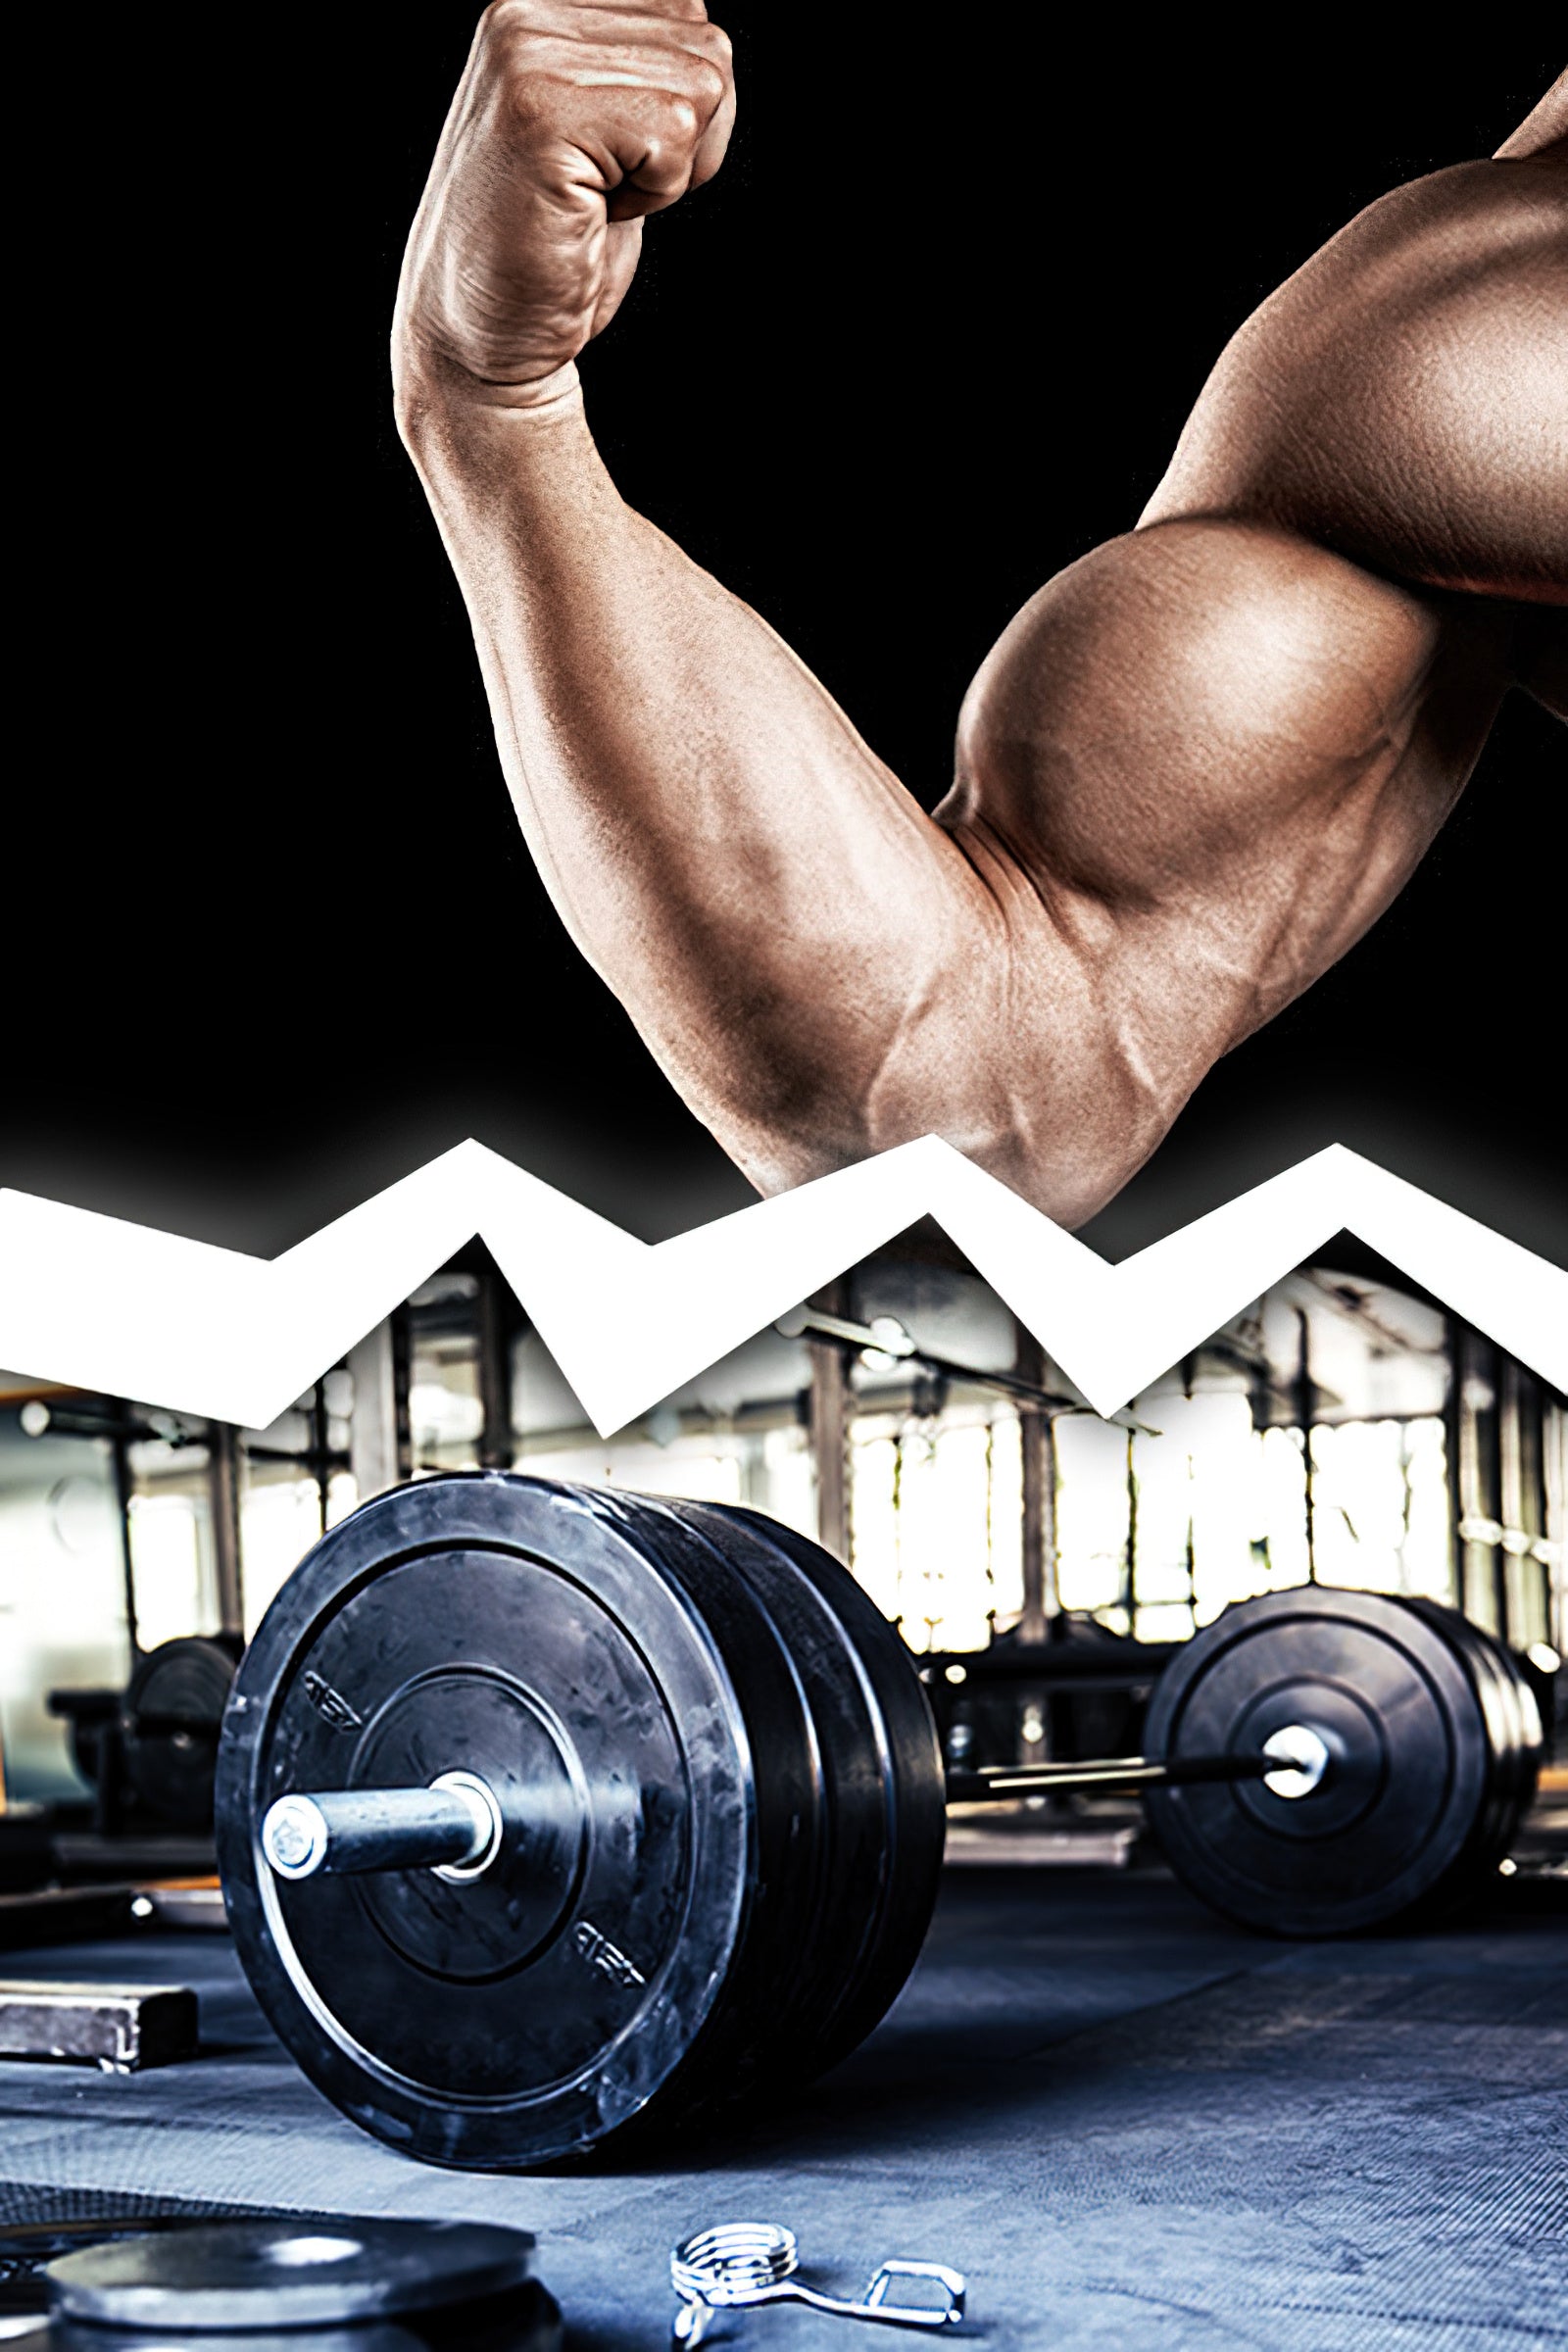 Den Muskel spüren vs. das Gewicht bewegen